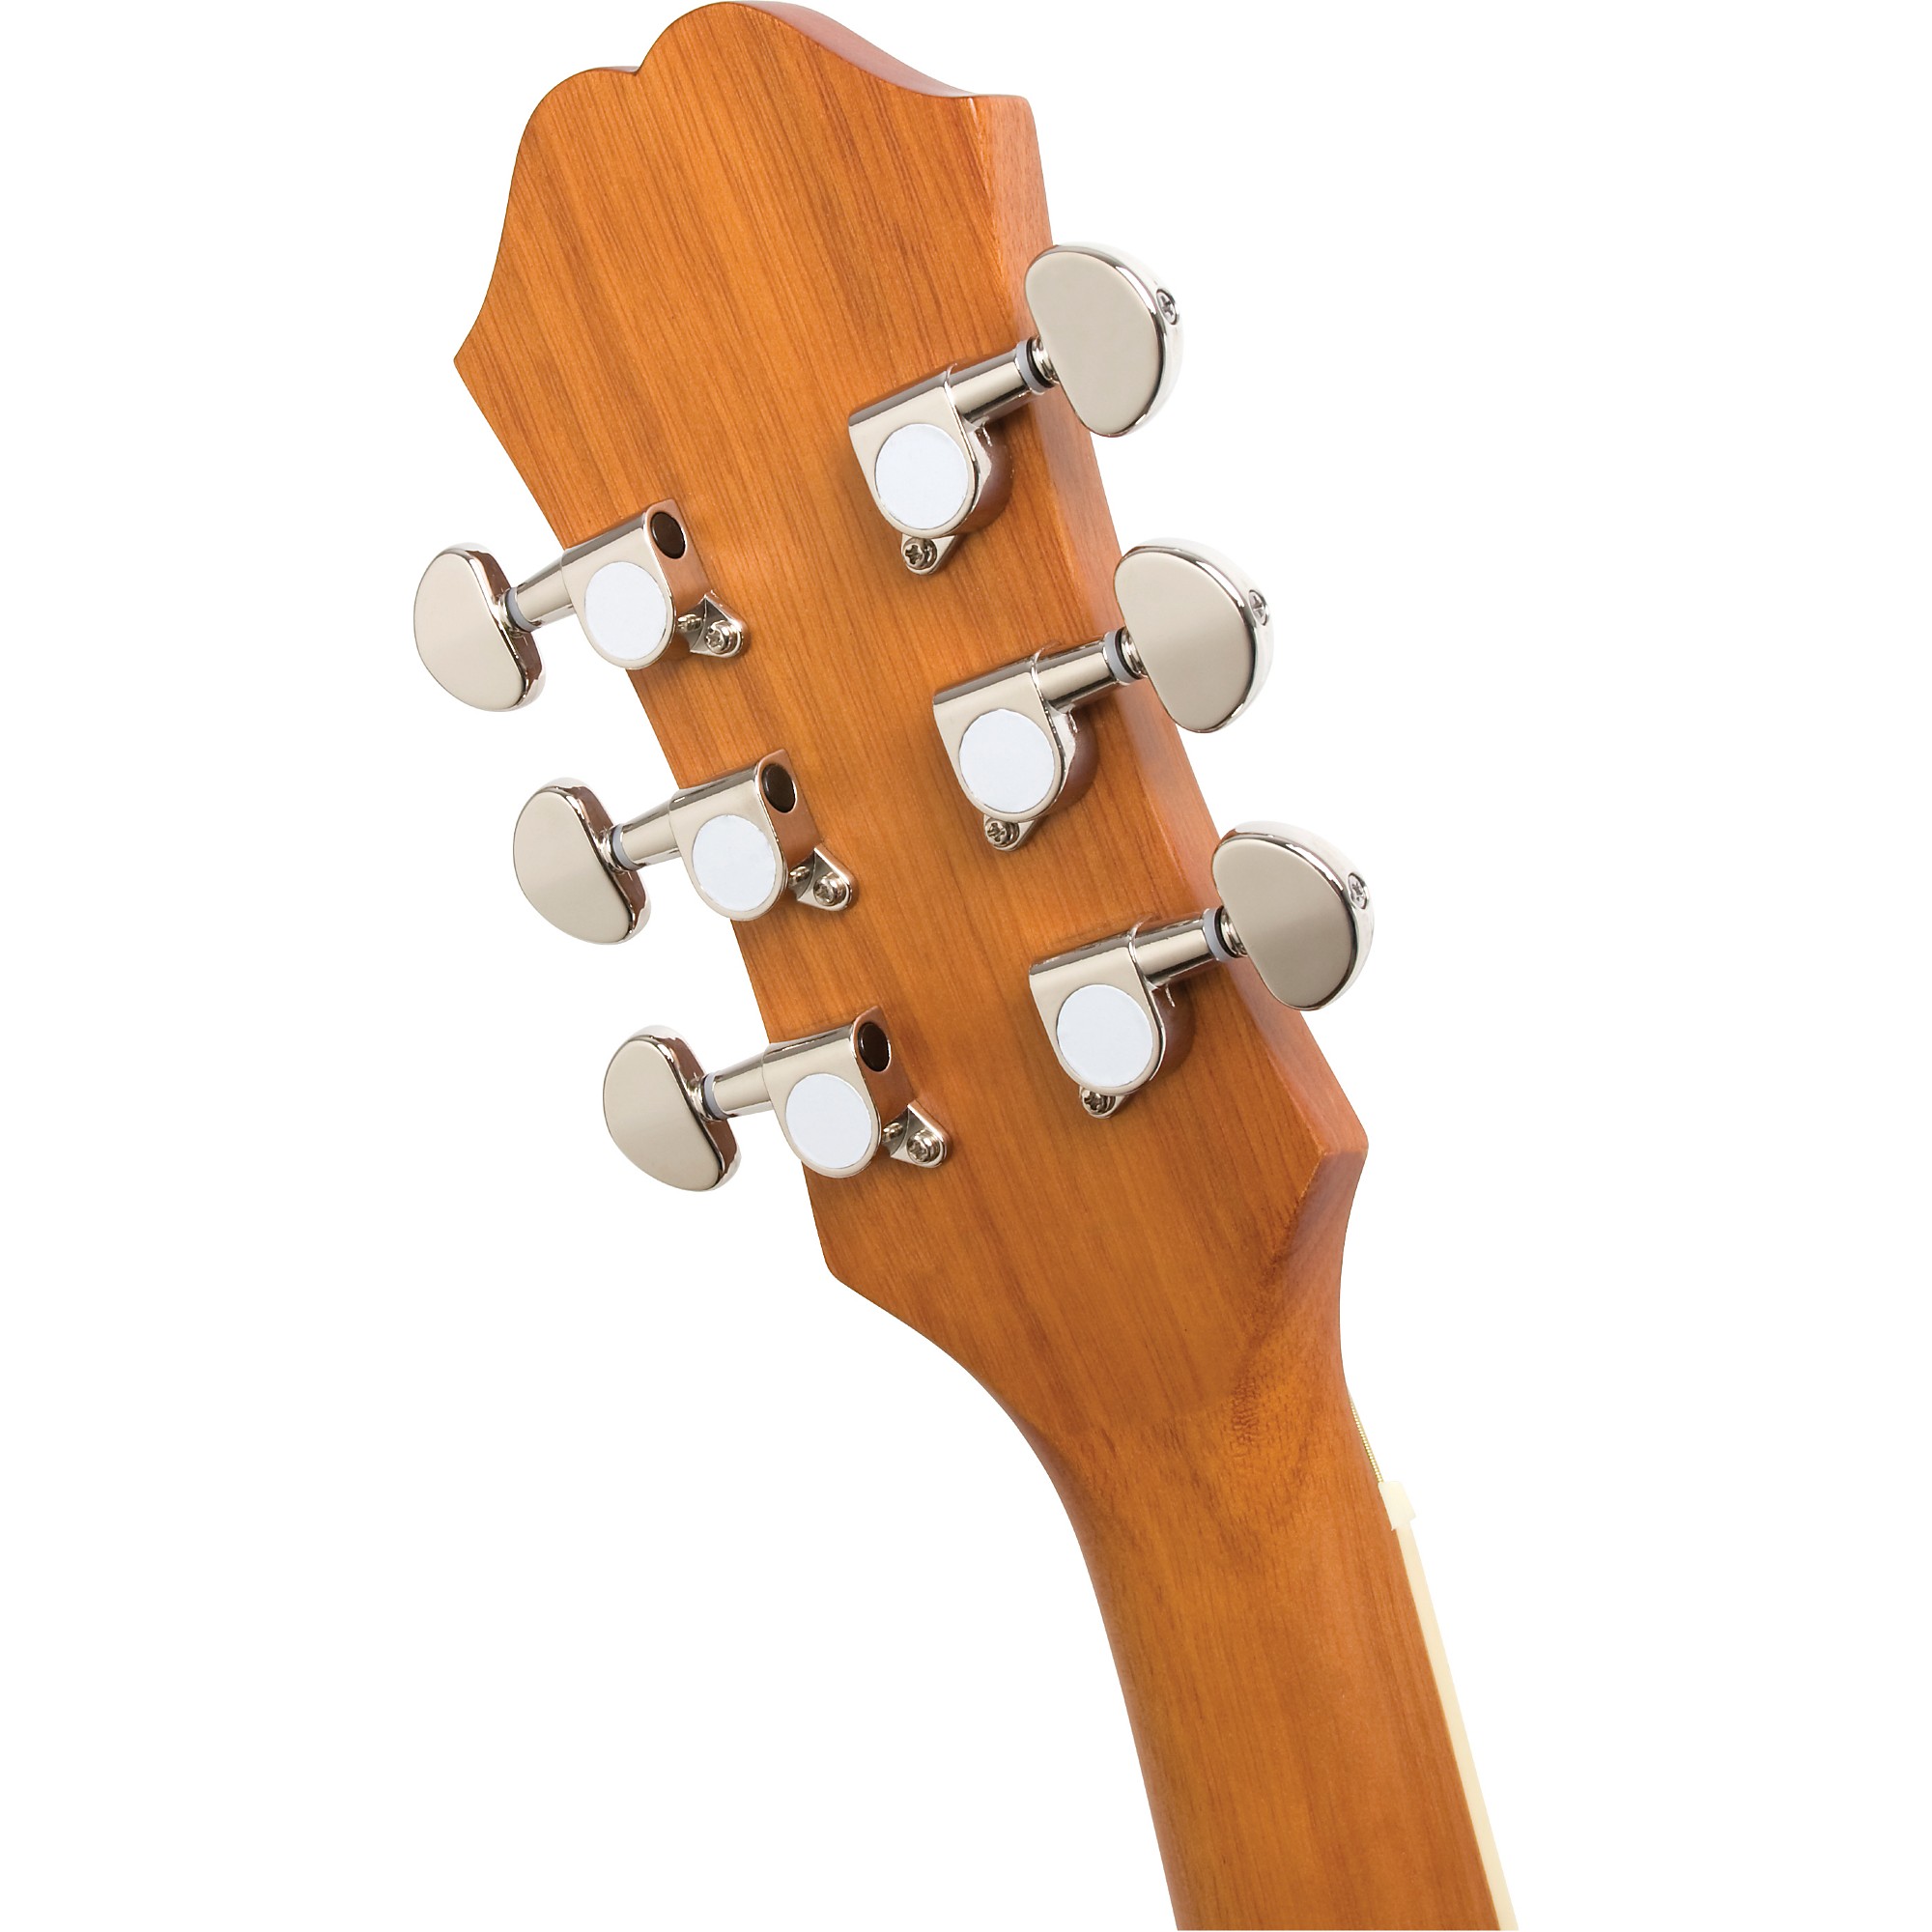 Epiphone J-45 Studio Acoustic Guitar Natural | Guitar Center